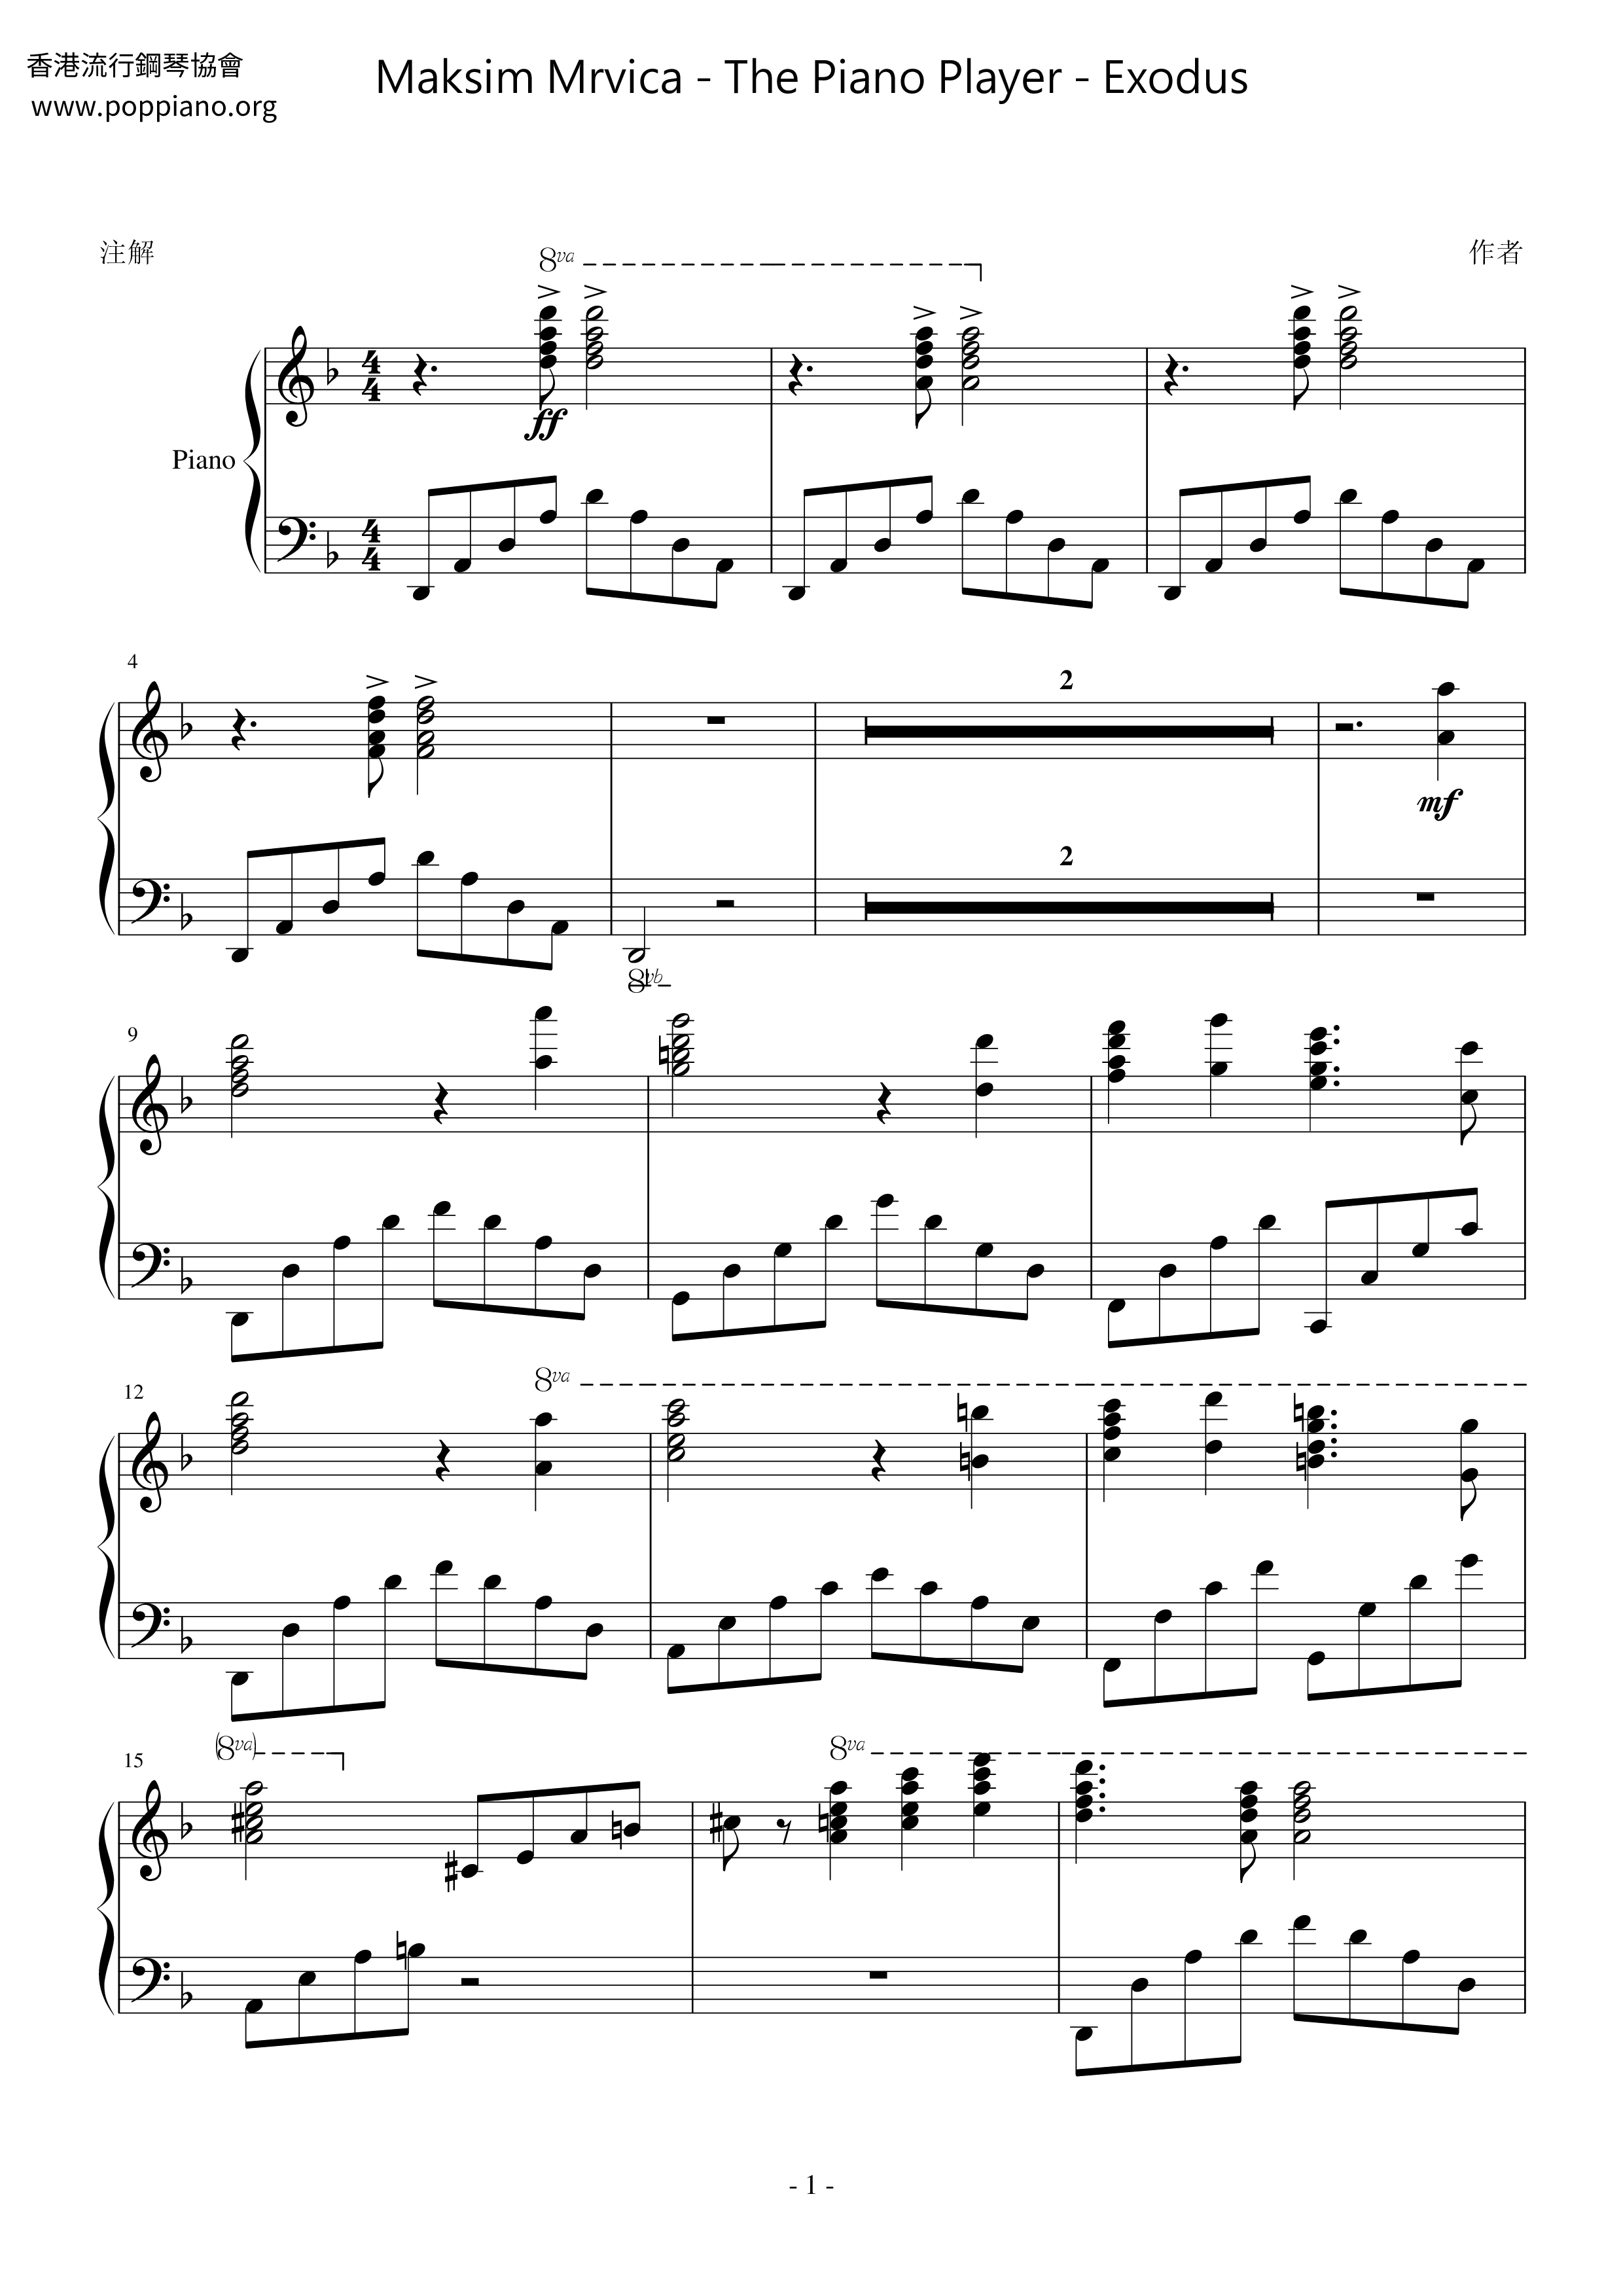 The Piano Player - Exodus琴谱